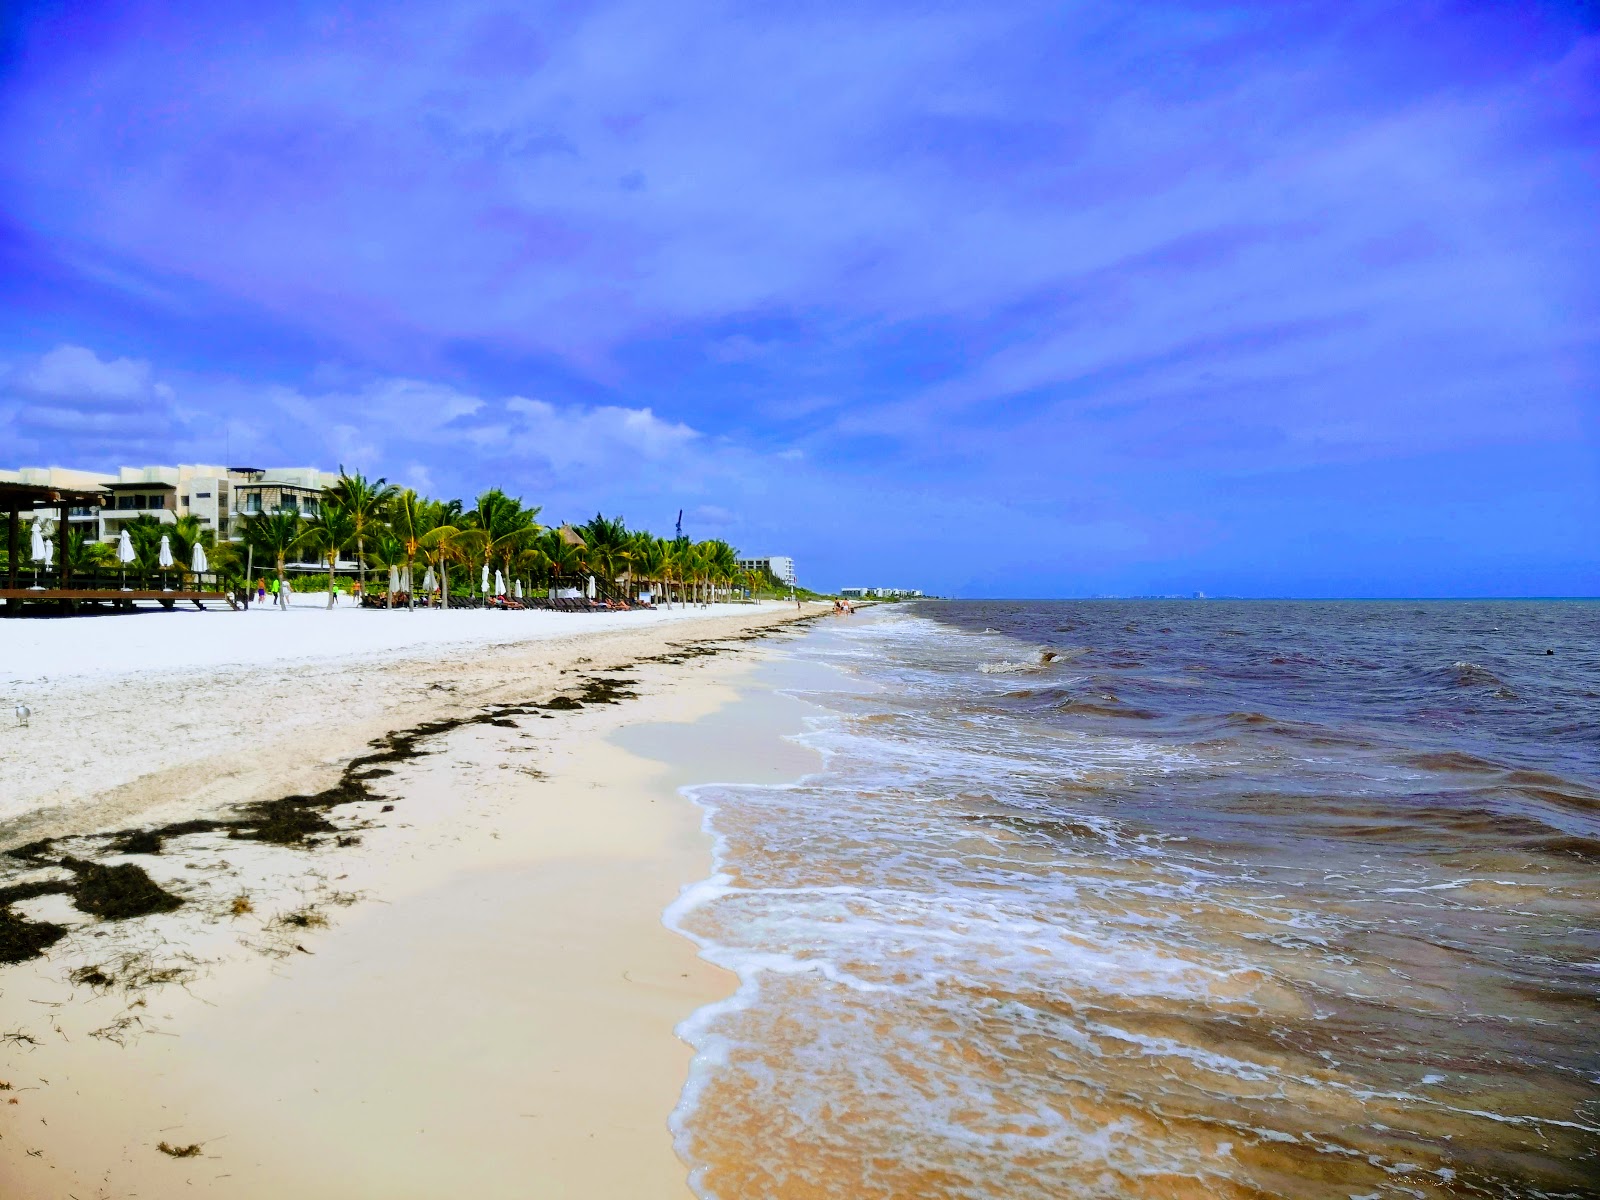 Φωτογραφία του Royalton Riviera Cancun με μακρά ευθεία ακτή